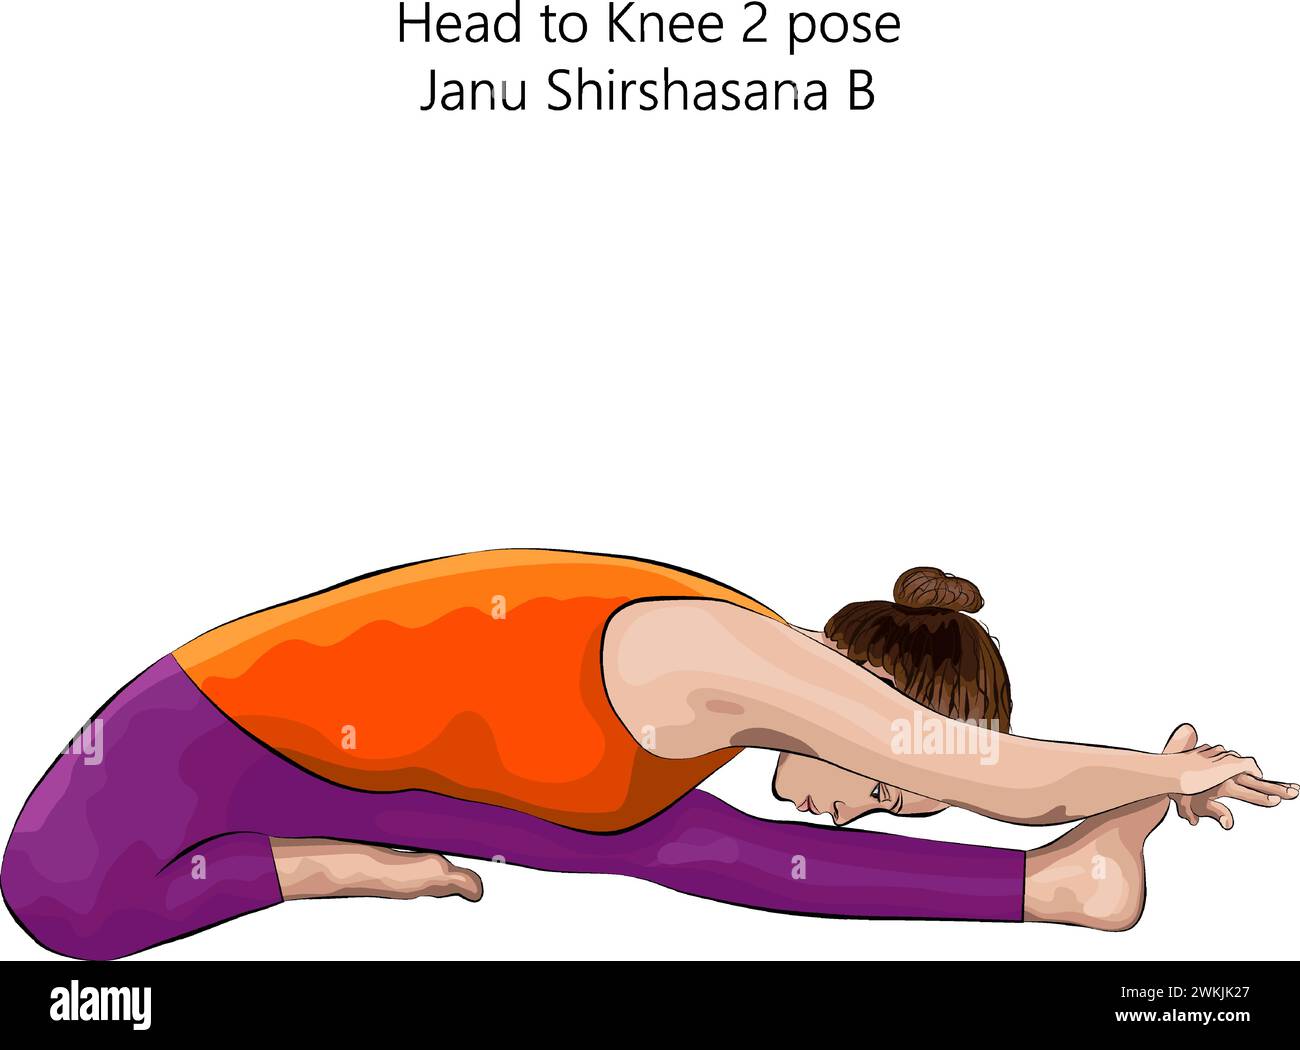 Giovane donna che fa yoga Janu Shirshasana B. testa a ginocchio 2 posa. Difficoltà intermedia. Illustrazione vettoriale isolata. Illustrazione Vettoriale